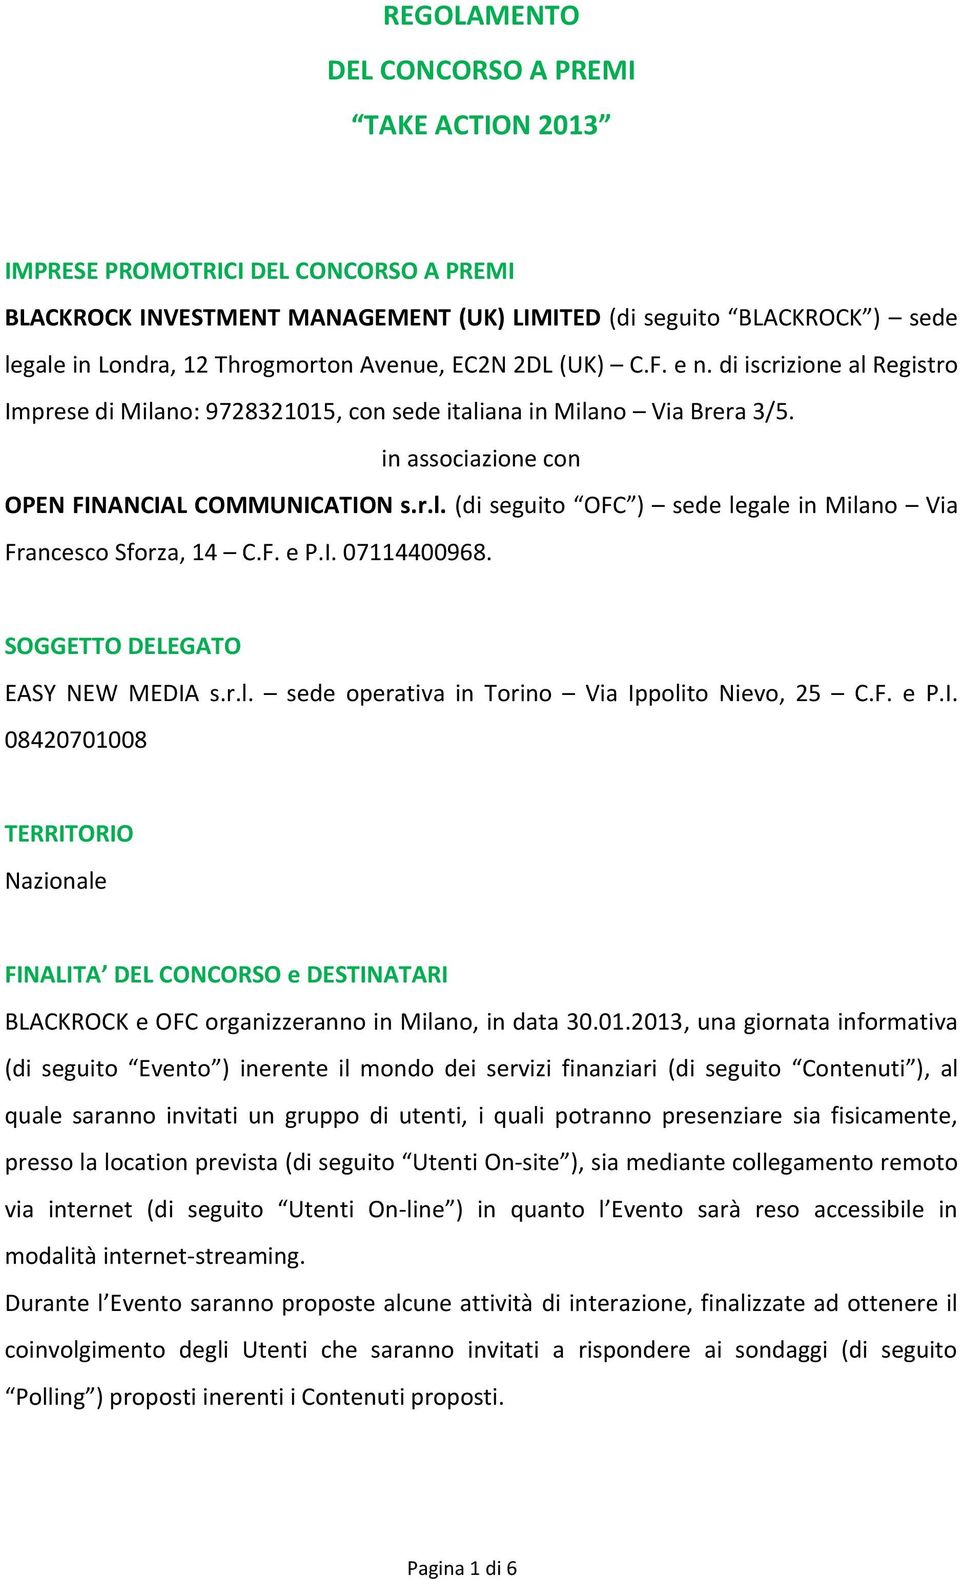 F. e P.I. 07114400968. SOGGETTO DELEGATO EASY NEW MEDIA s.r.l. sede operativa in Torino Via Ippolito Nievo, 25 C.F. e P.I. 08420701008 TERRITORIO Nazionale FINALITA DEL CONCORSO e DESTINATARI BLACKROCK e OFC organizzeranno in Milano, in data 30.